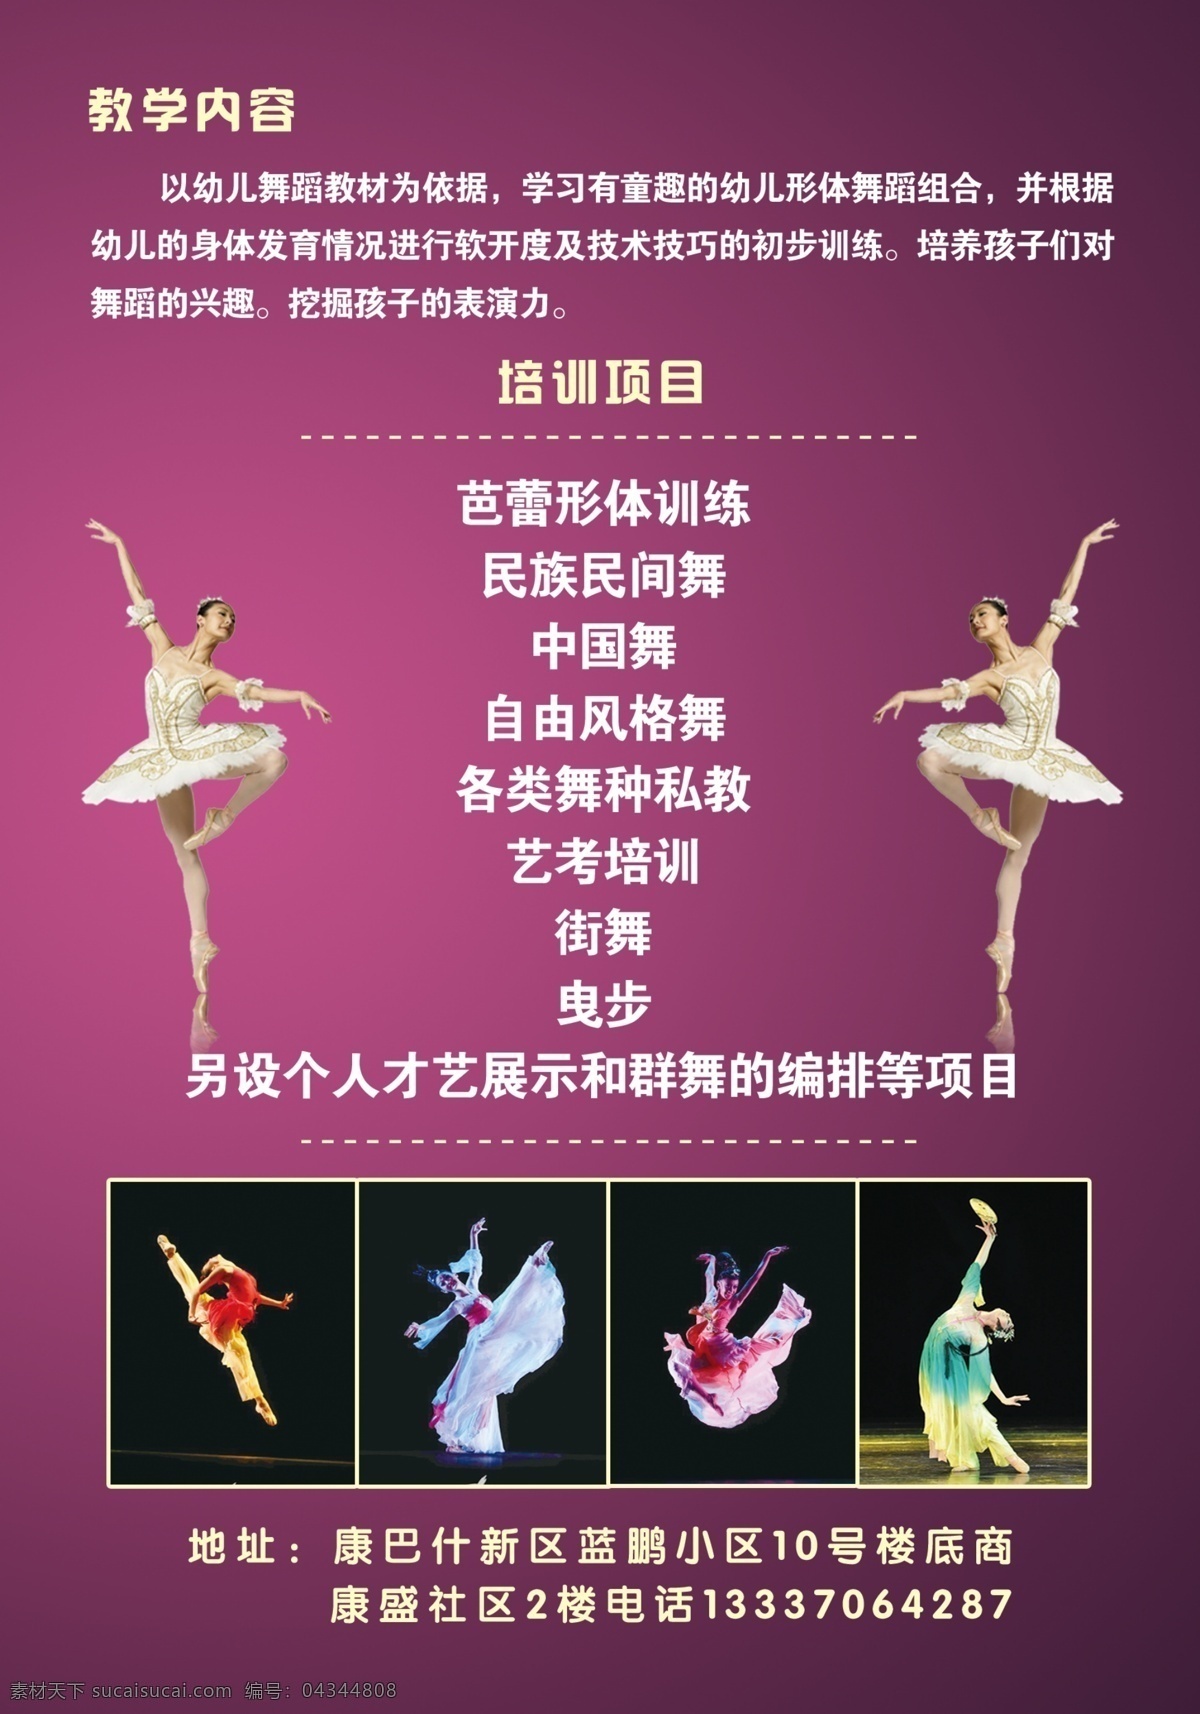 紫色背景 舞蹈宣传单 芭蕾 舞蹈展板 舞蹈海报 dm宣传单